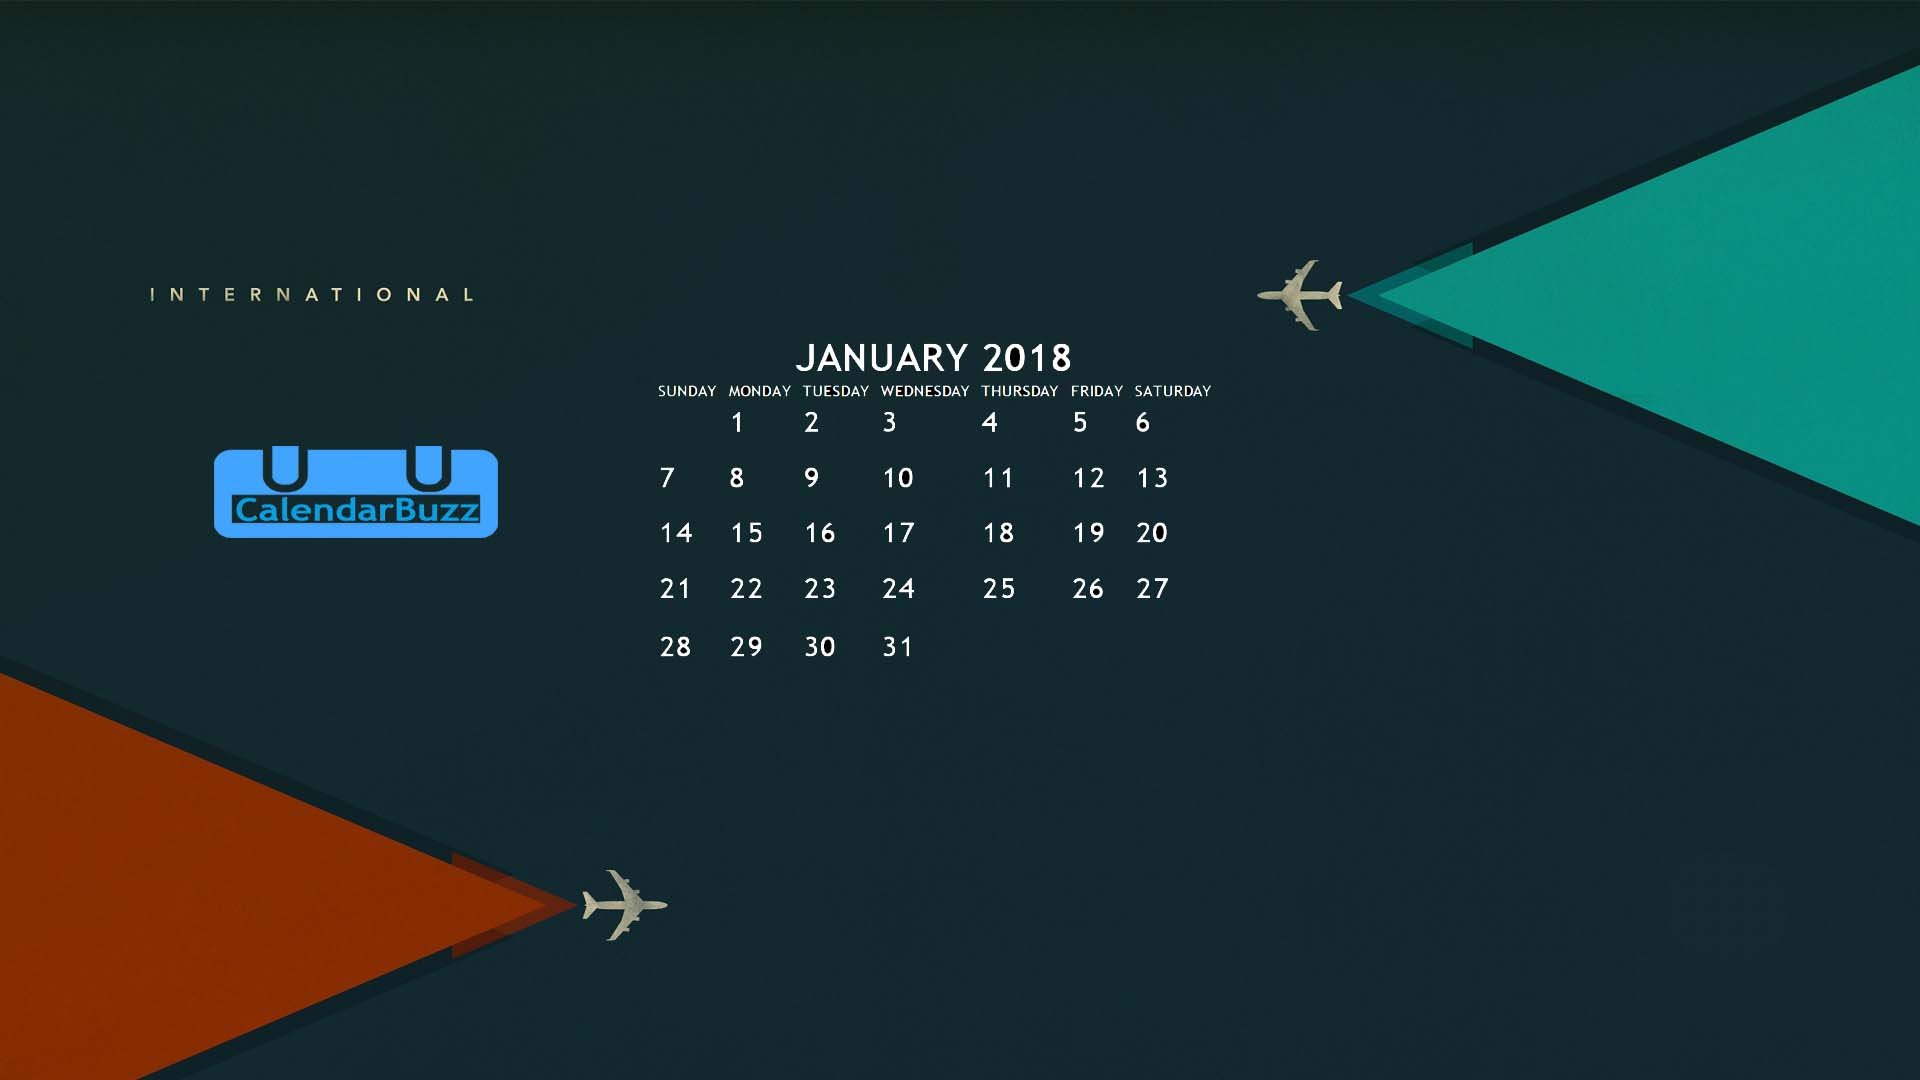 January 2018 Calendar Wallpaper CalendarBuzz 1920x1080